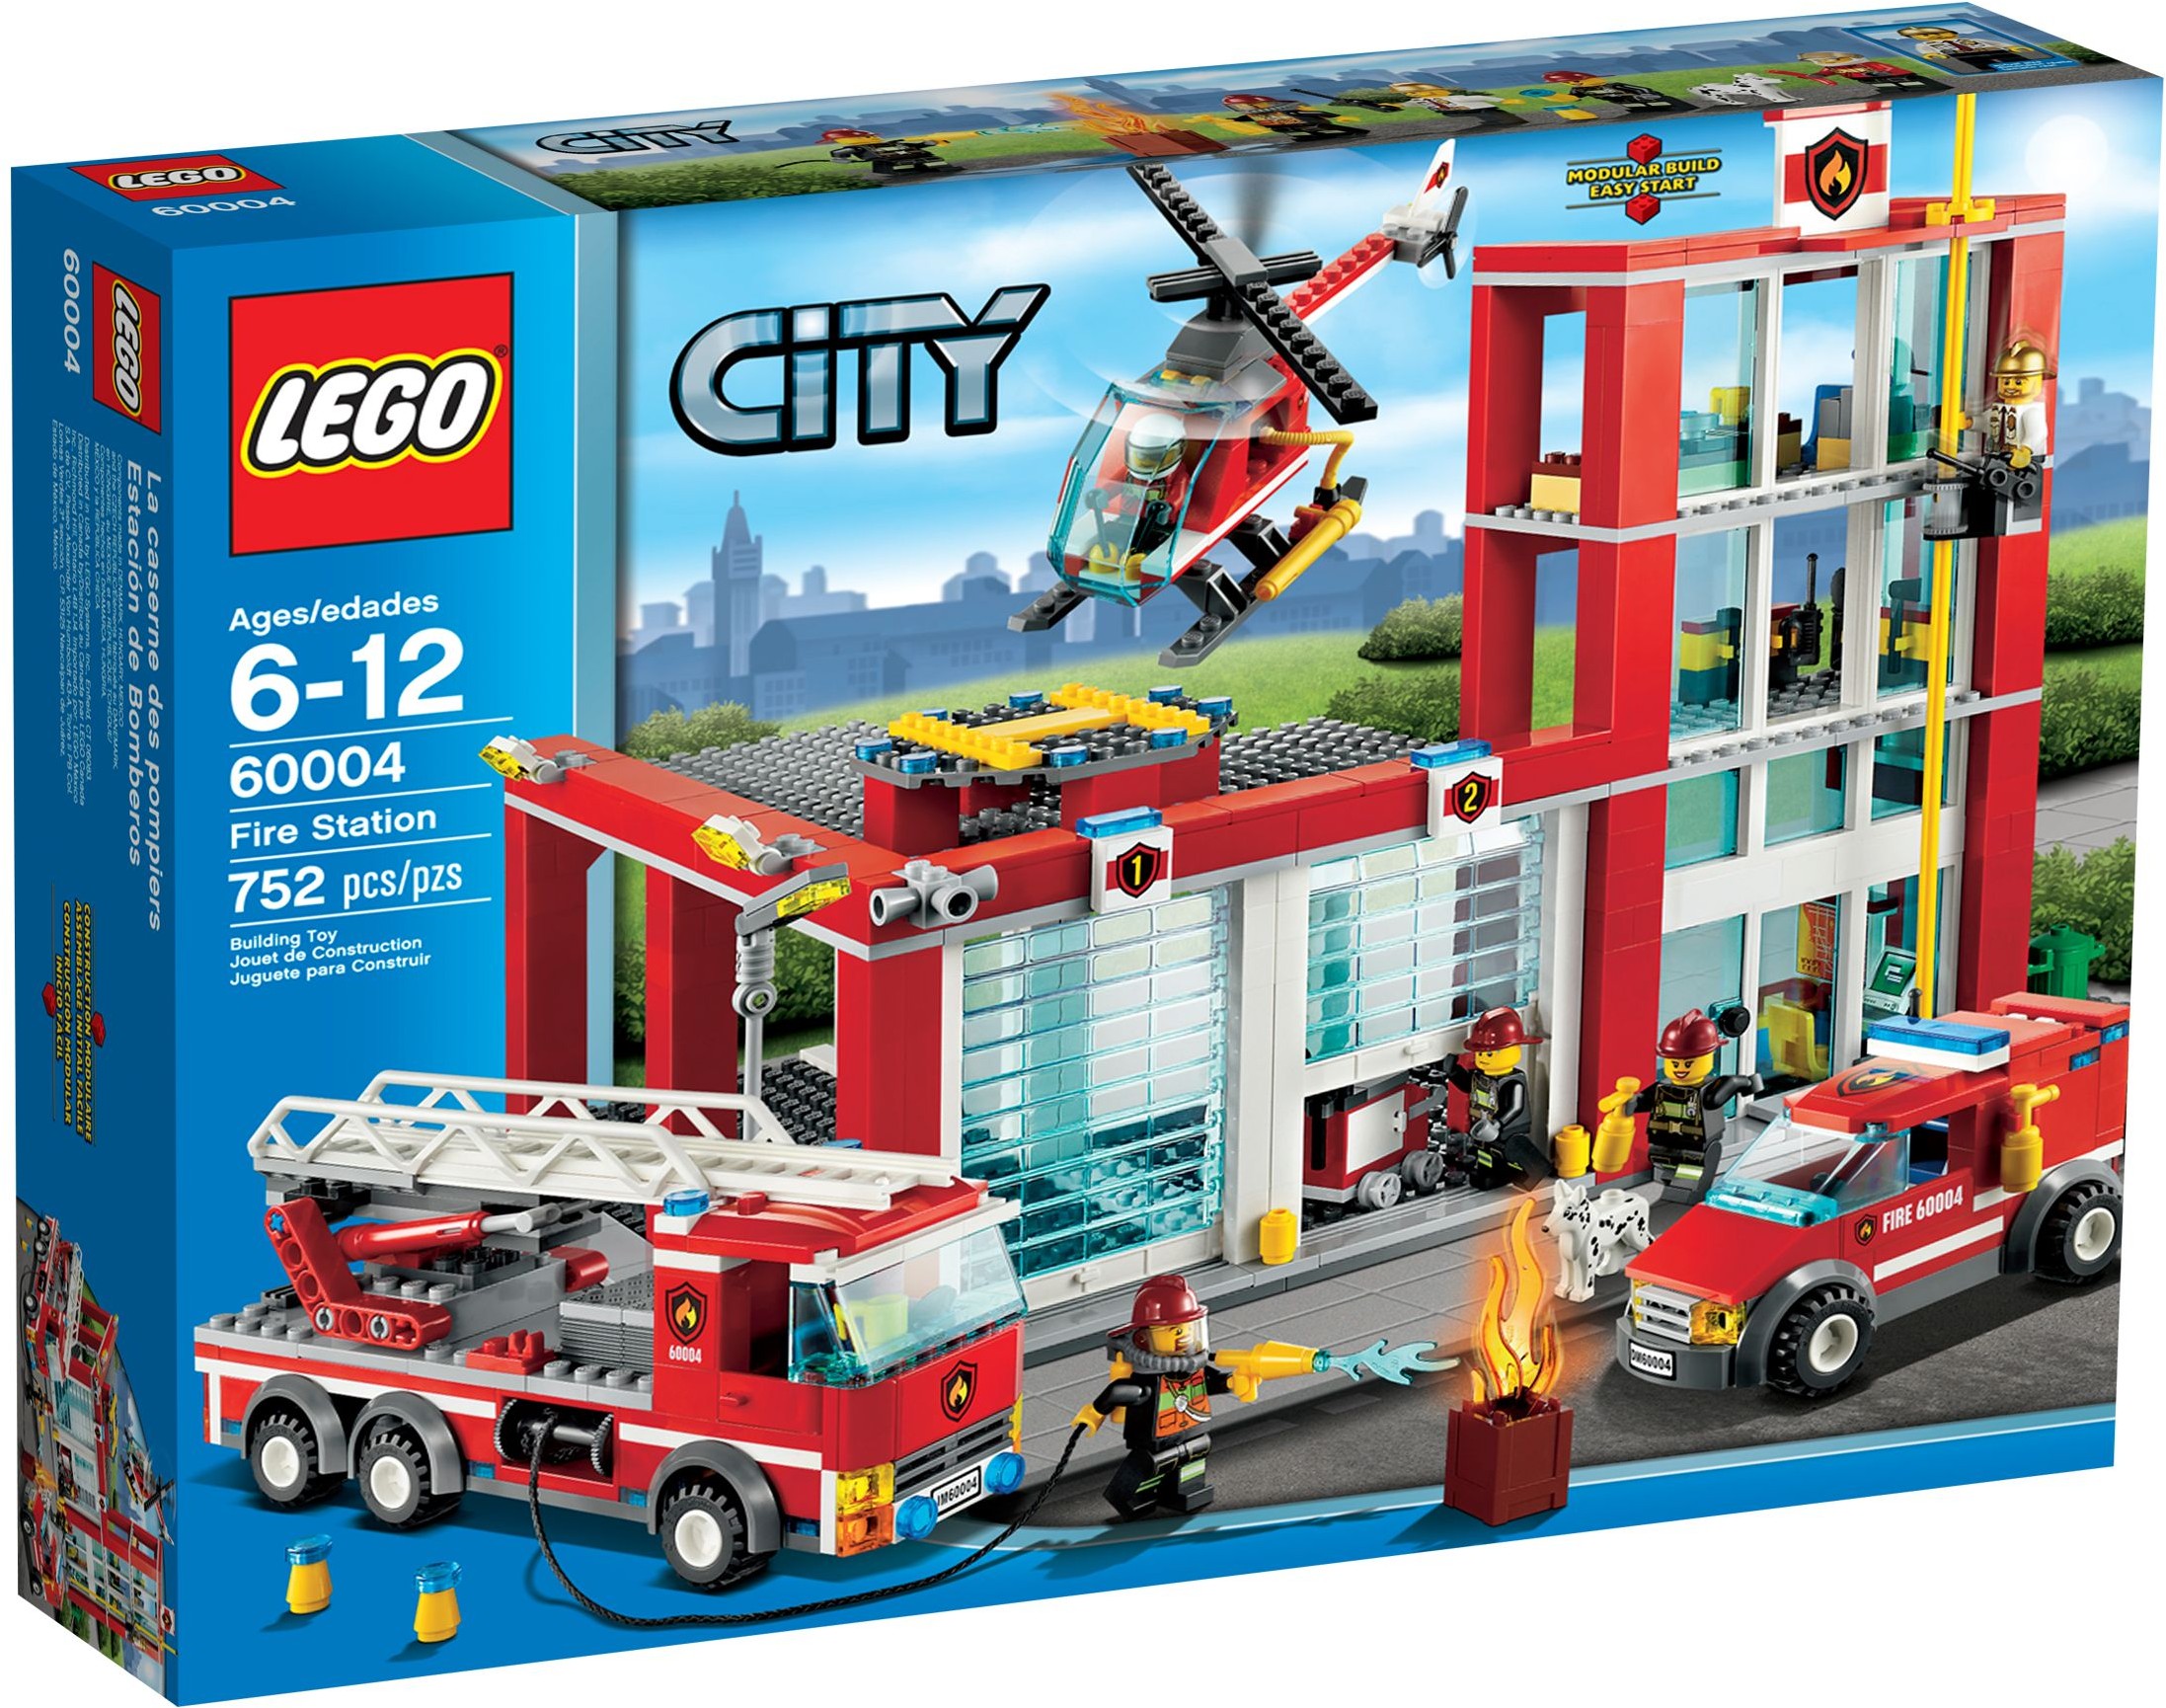 Ensemble de jeu LEGO City La caserne et le camion de pompiers